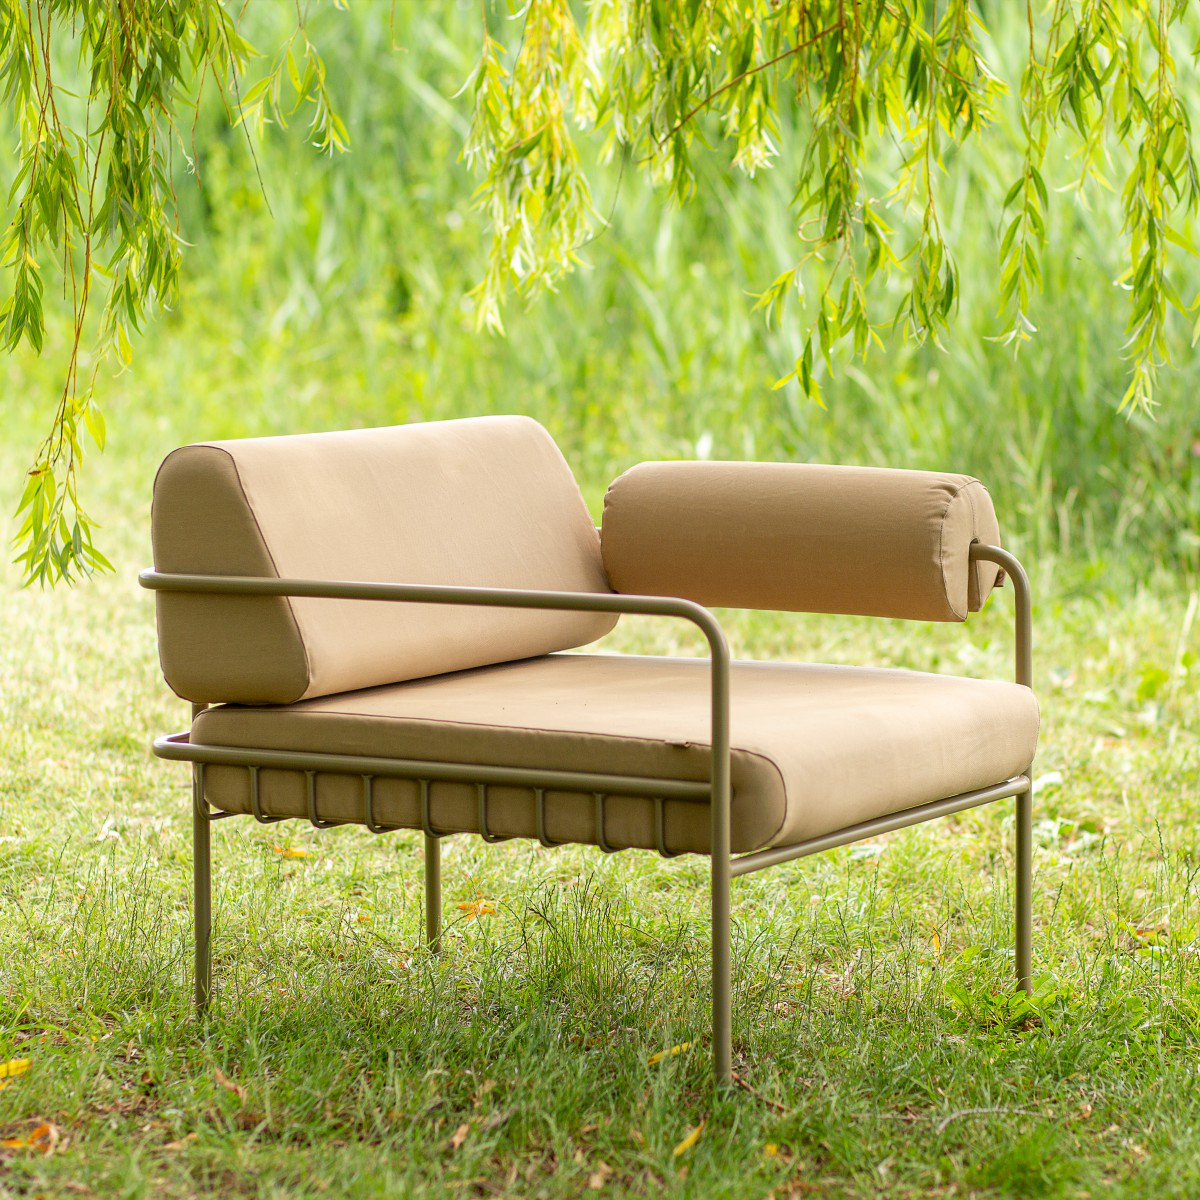 Sara Kele Outdoor Furniture Collection